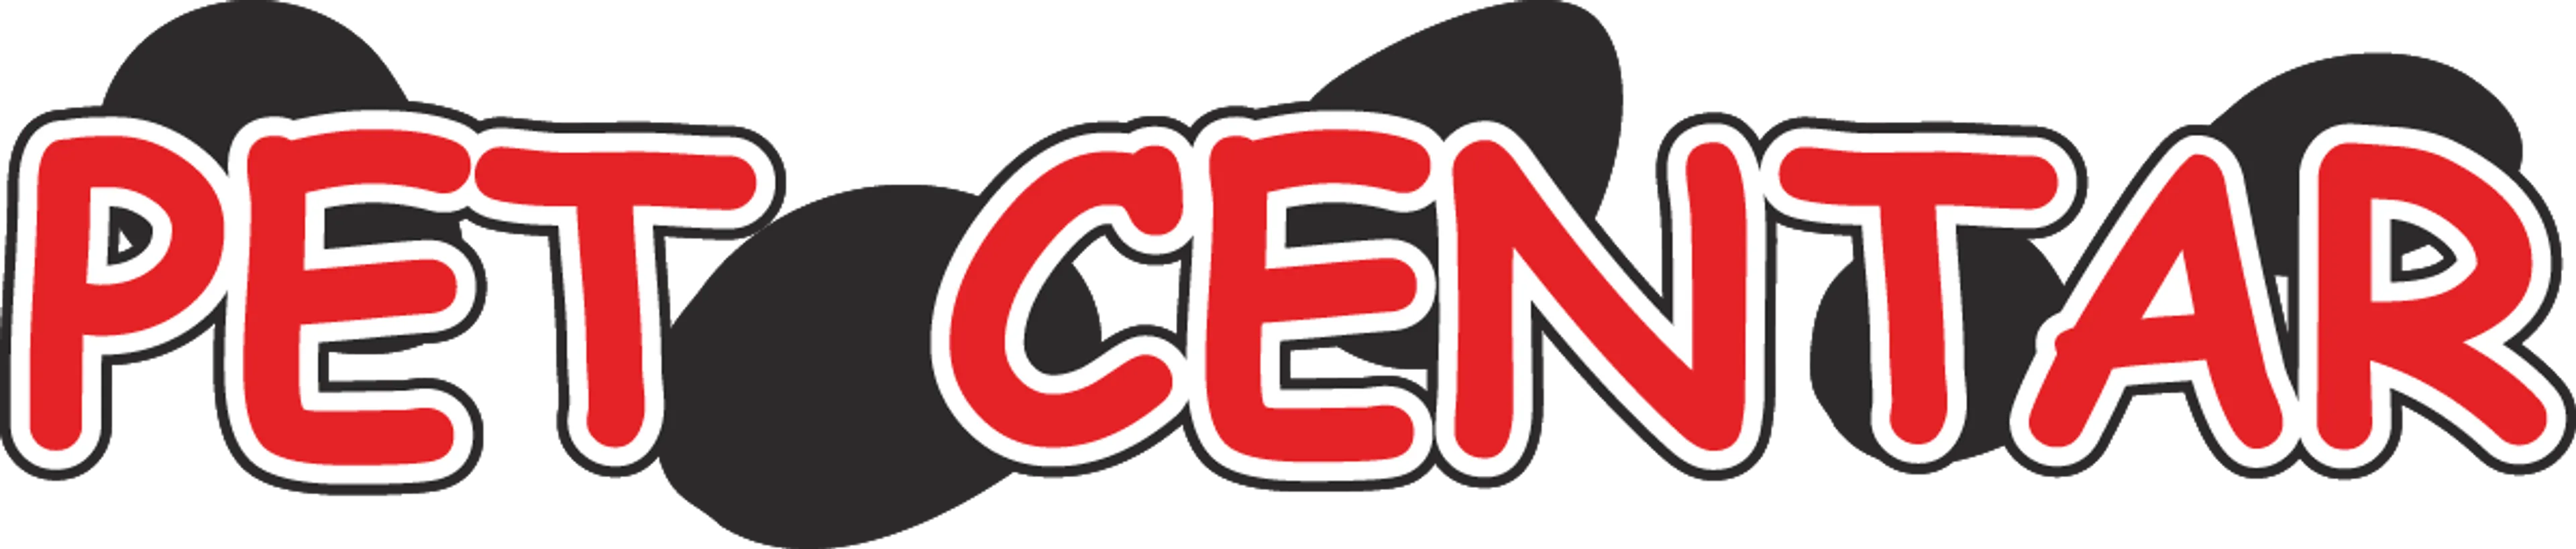 PET CENTAR logo